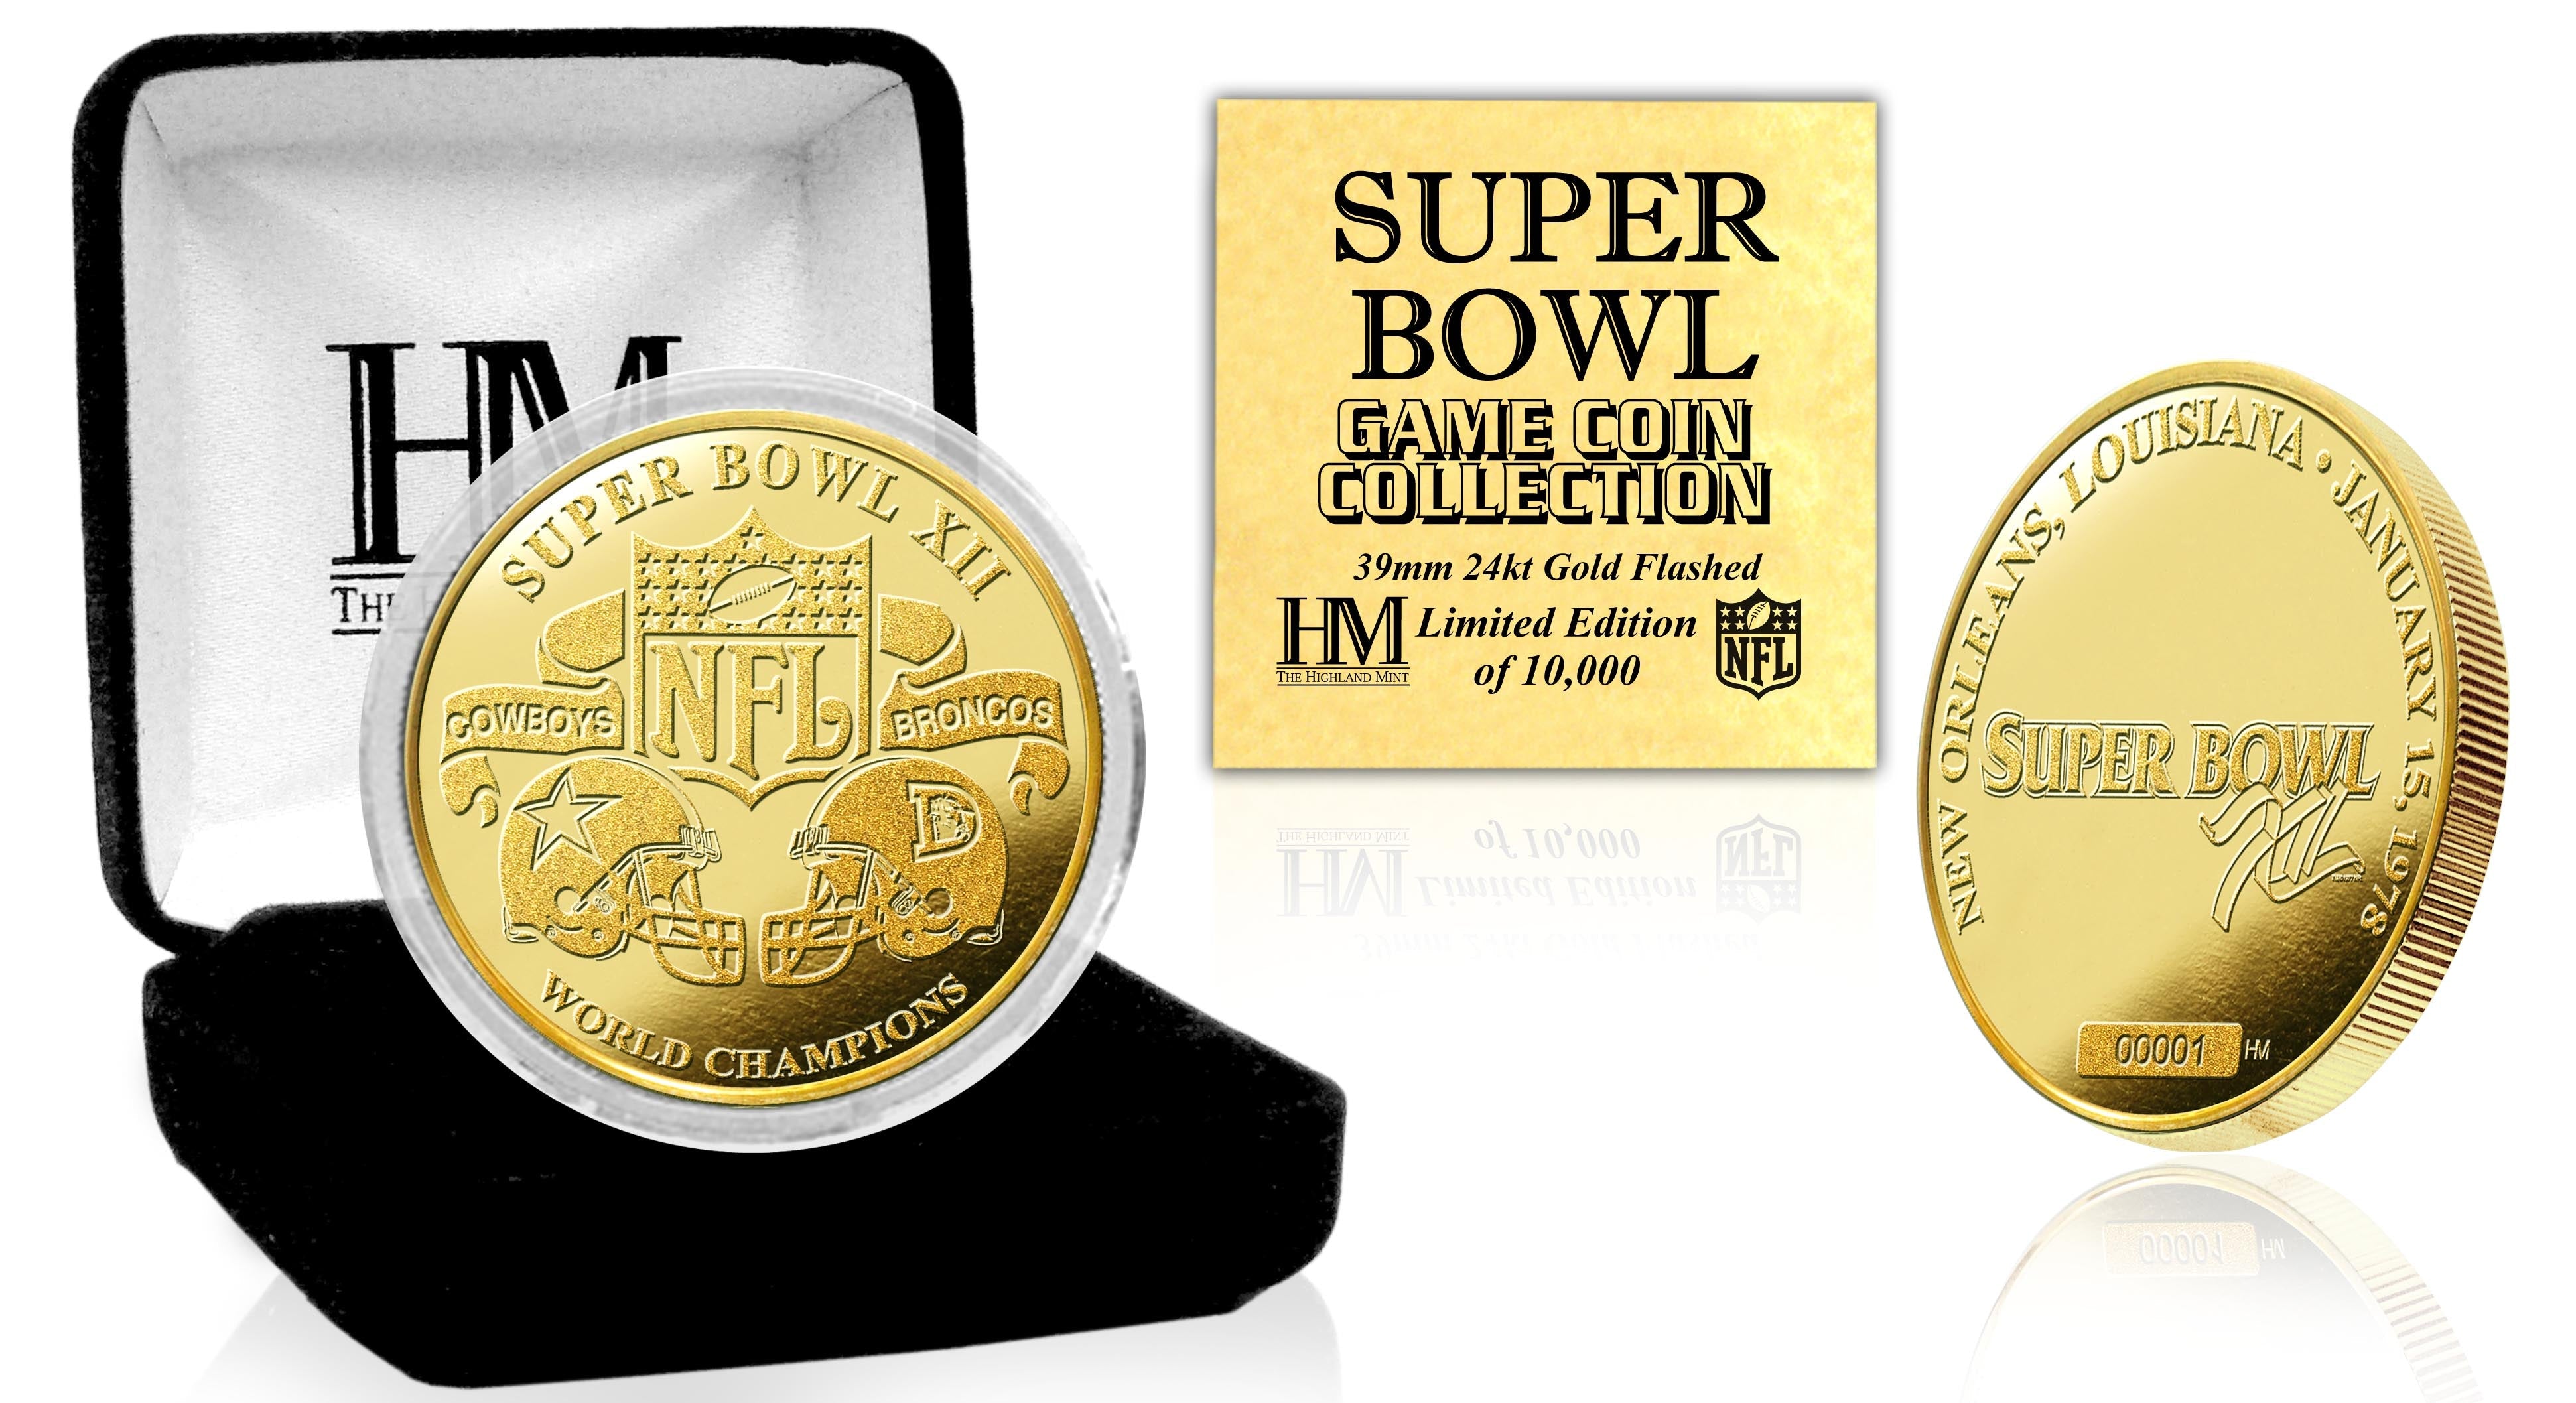 Super Bowl XII 24kt Gold Flip Coin